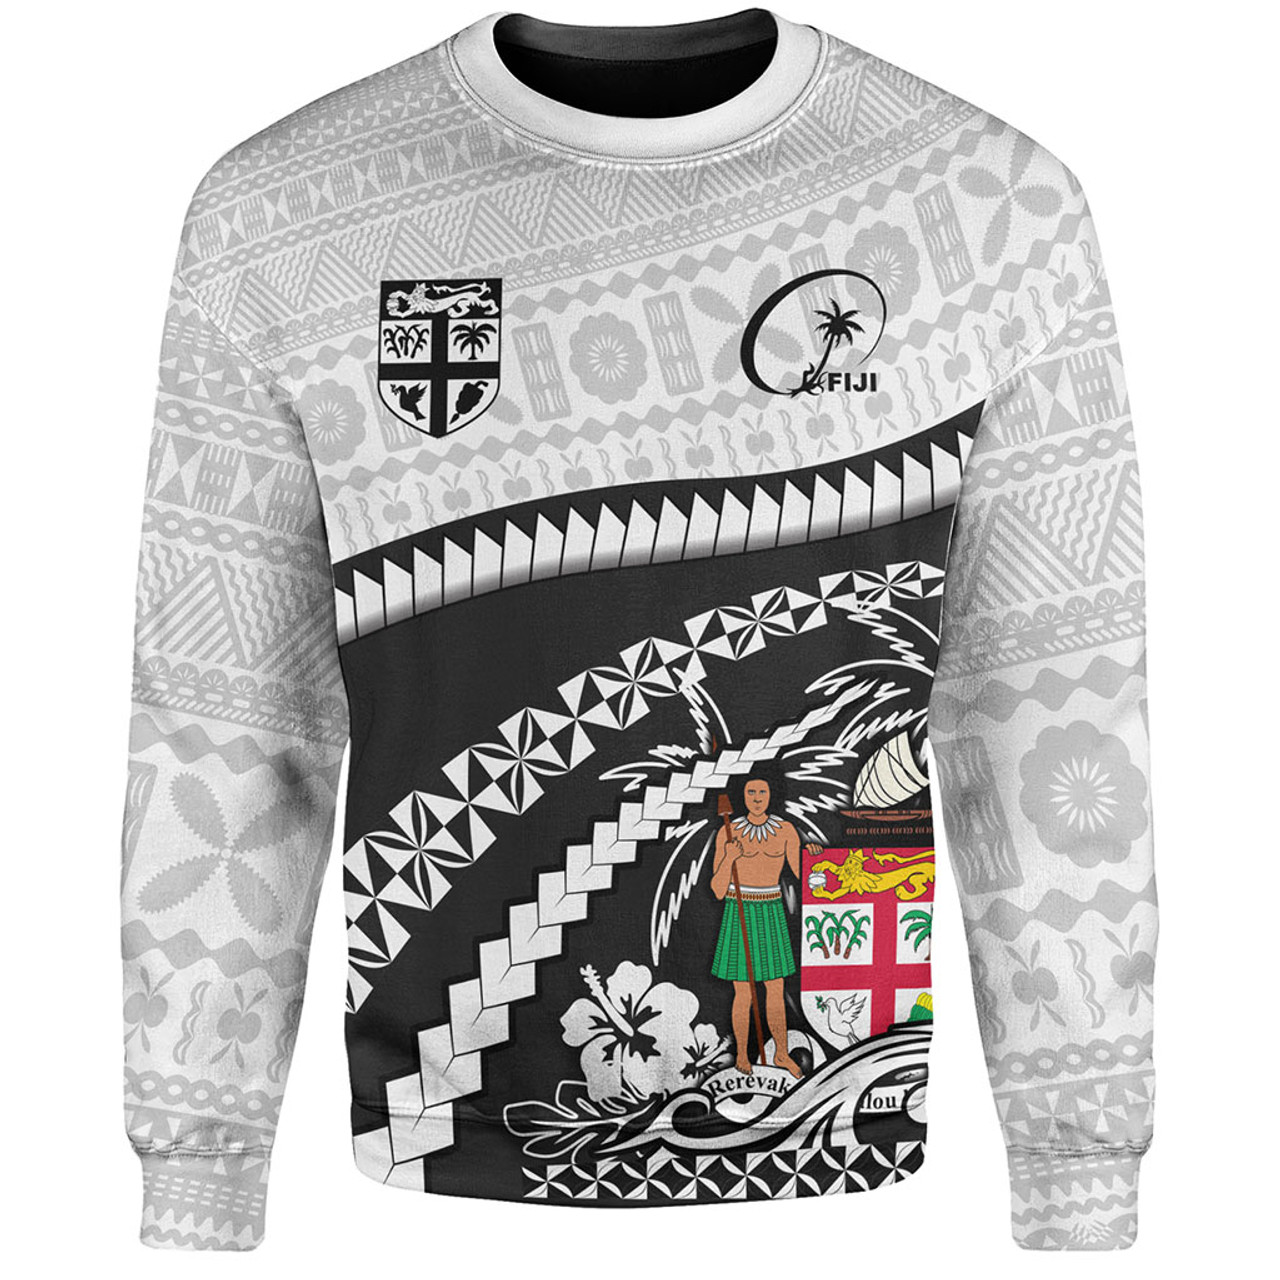 Fiji Sweatshirt Bula Rugby Style